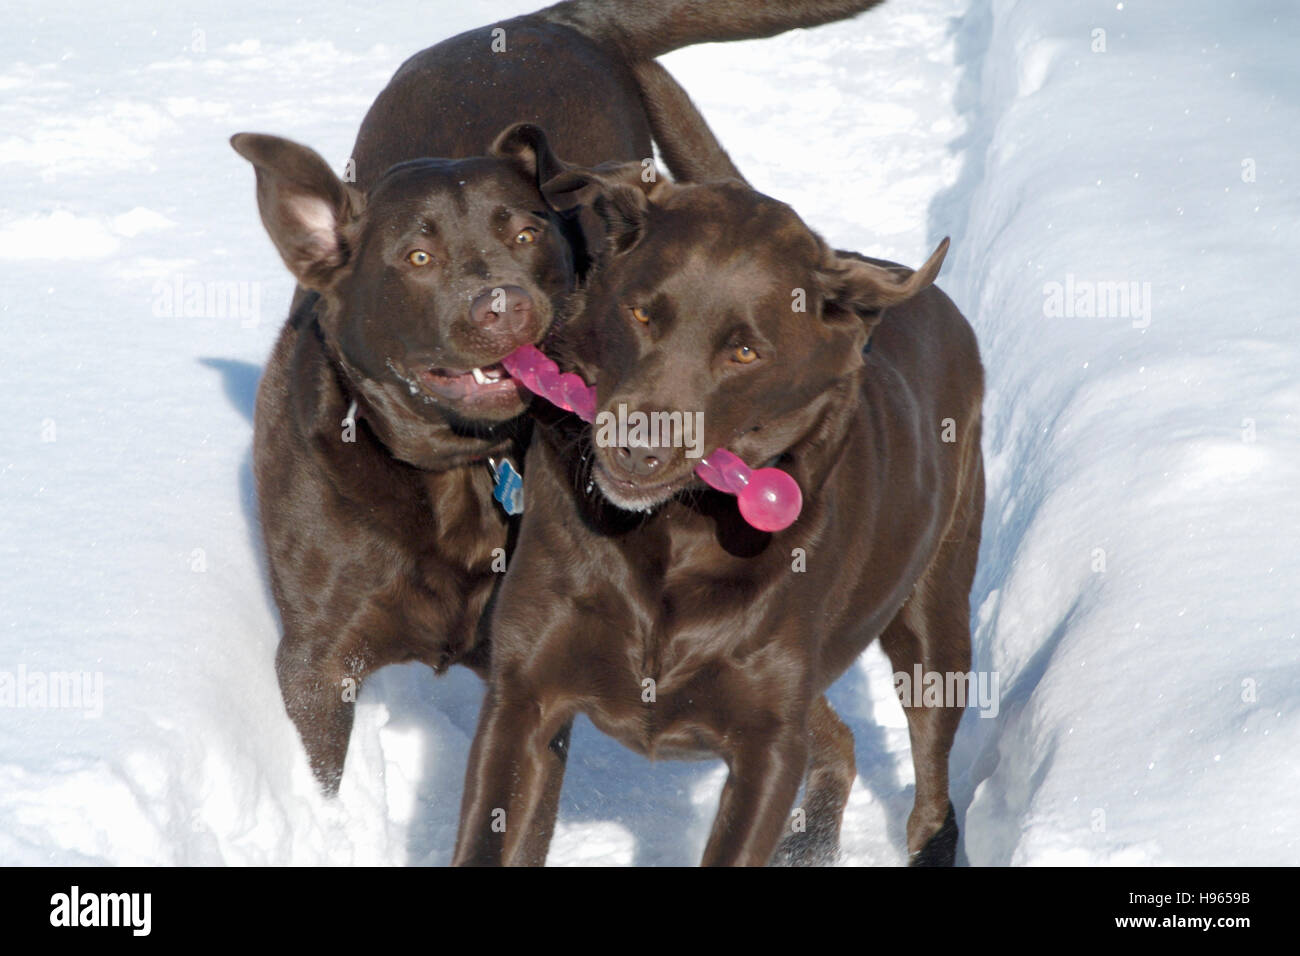 Chocolate Labrador Retriever playing in snow Stock Photo